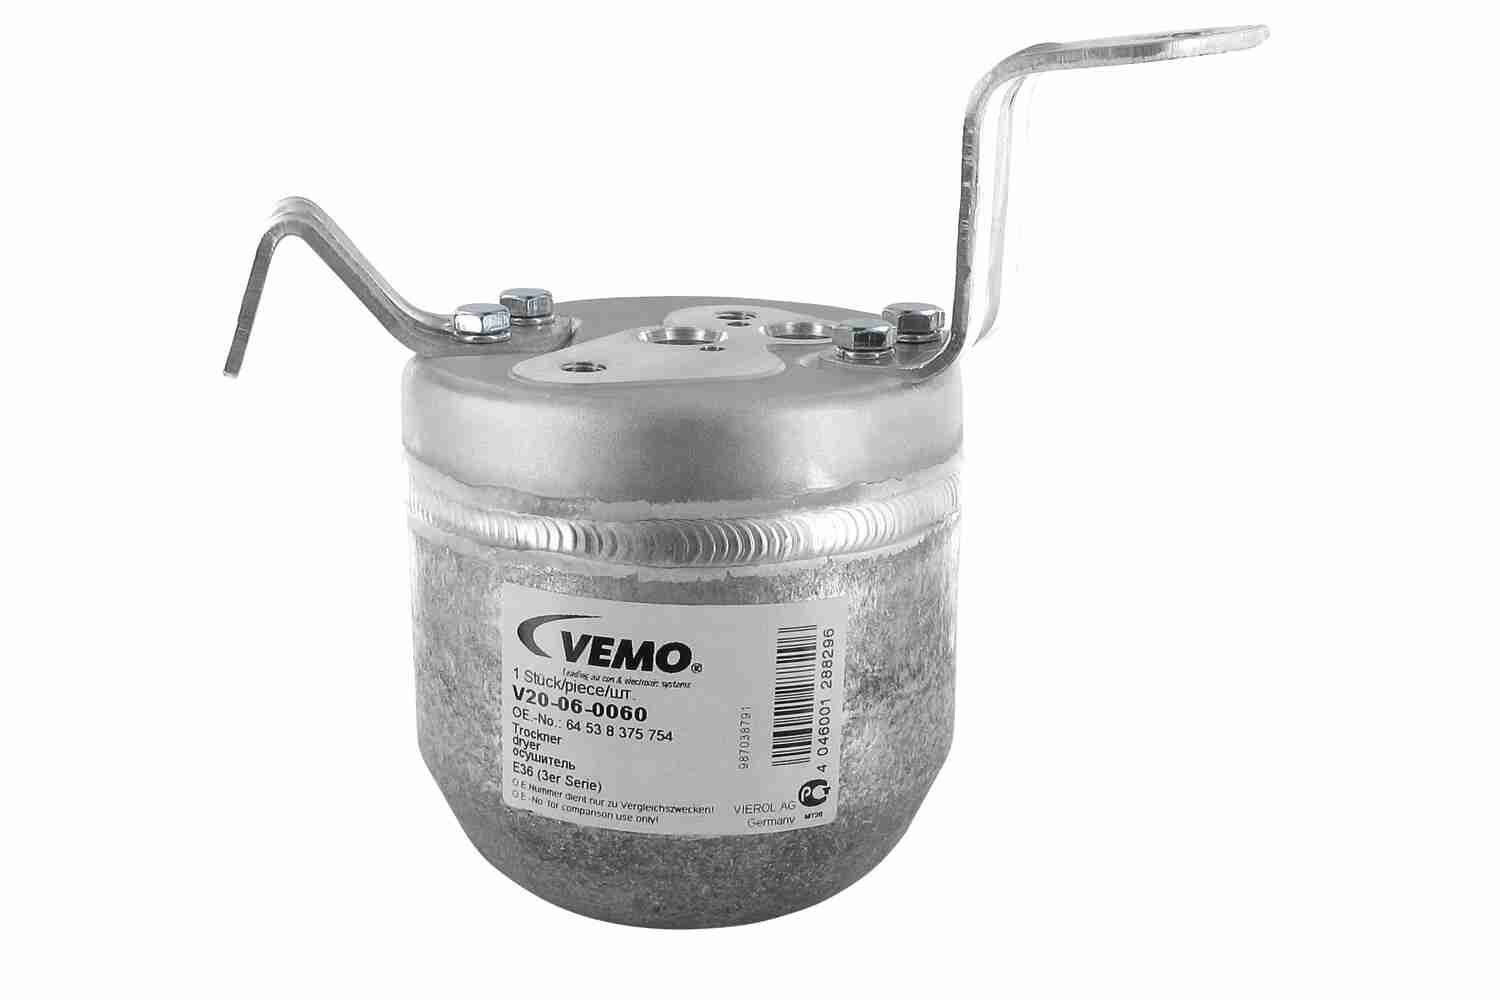 VEV20-06-0060-64538375 VEMO Original Quality Receiver drier V20-06-0060 buy